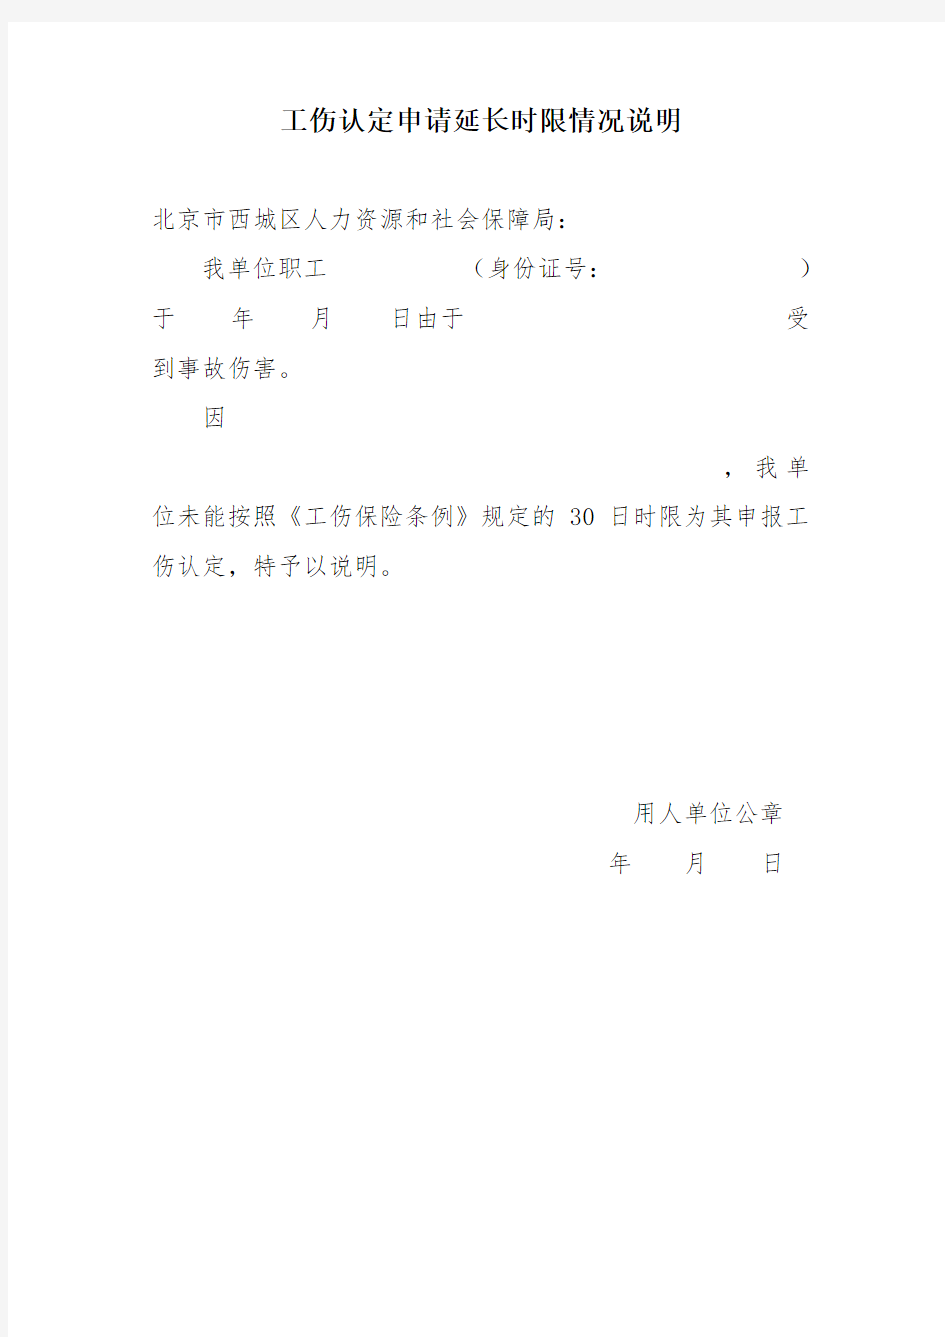 北京市工伤认定申请配套系列表格